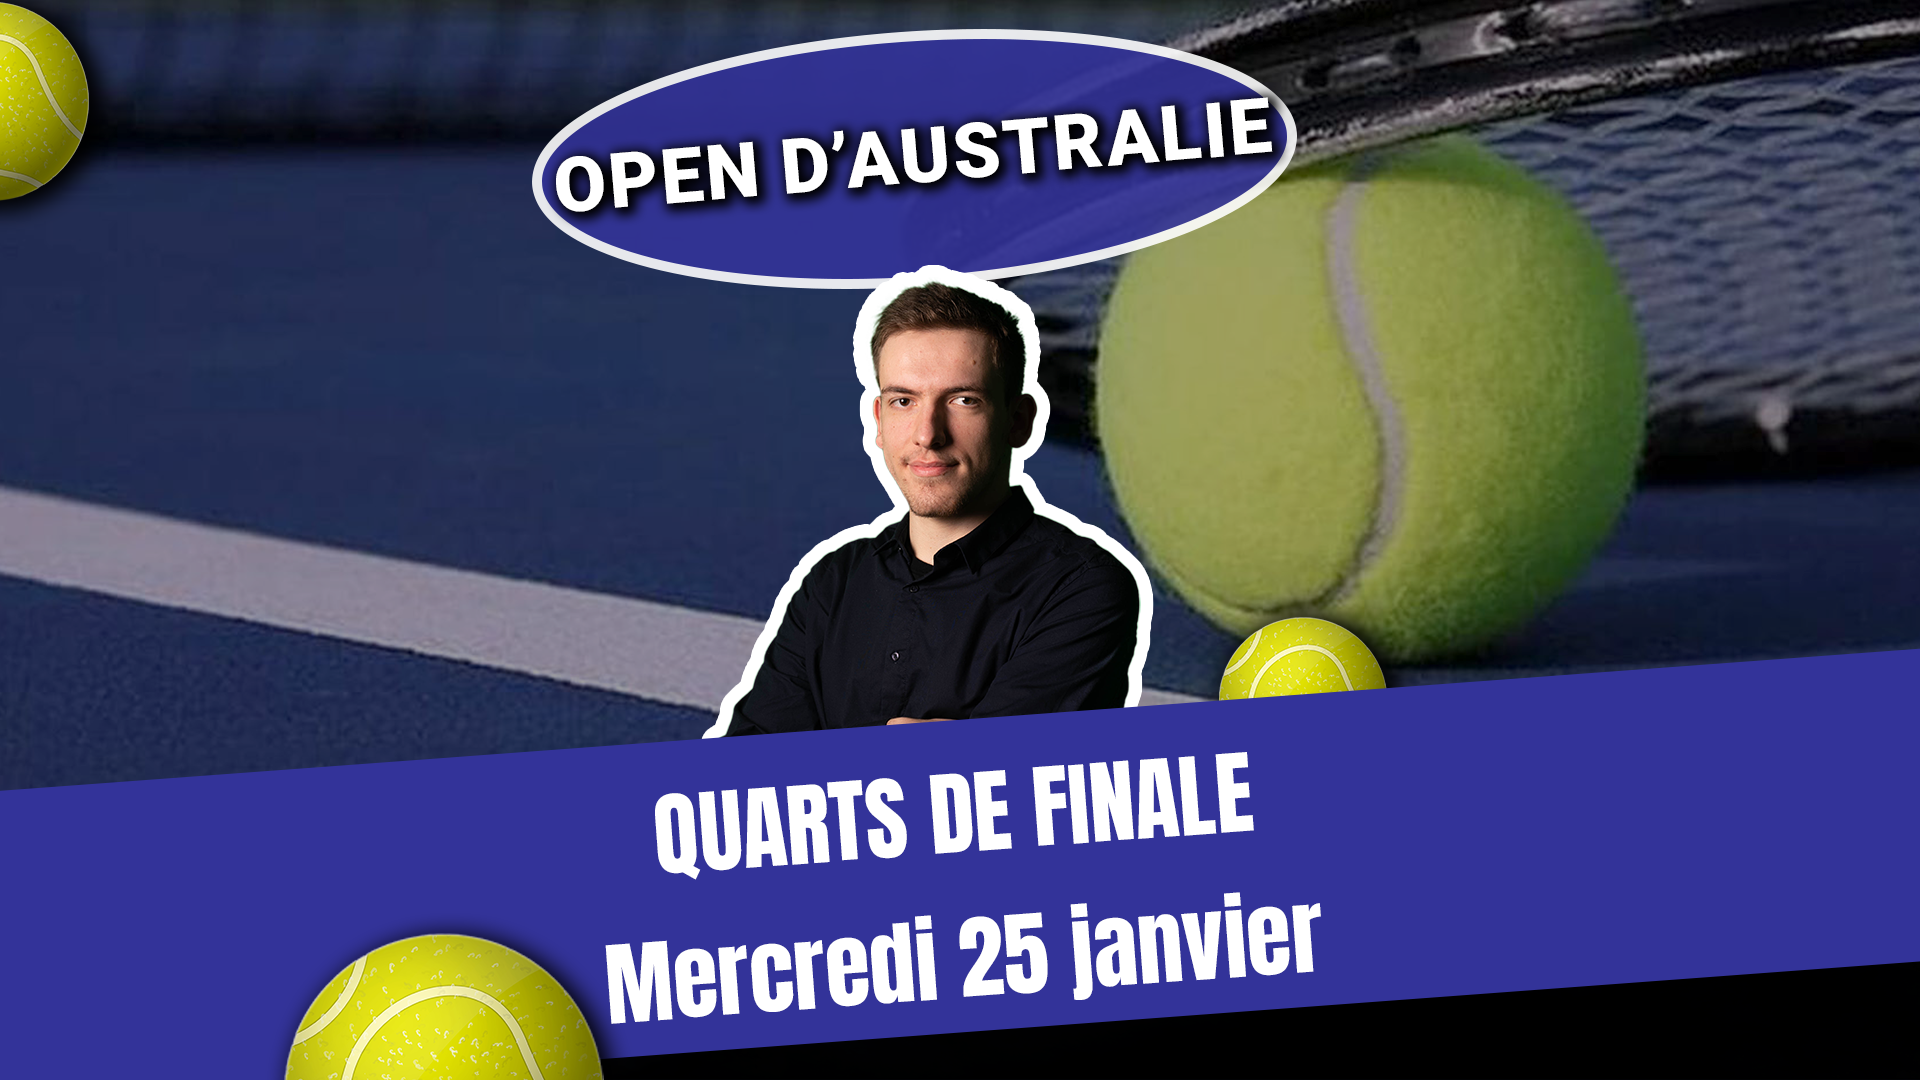 Vignette Quarts de finale Open d'Australie mercredi 25 janvier